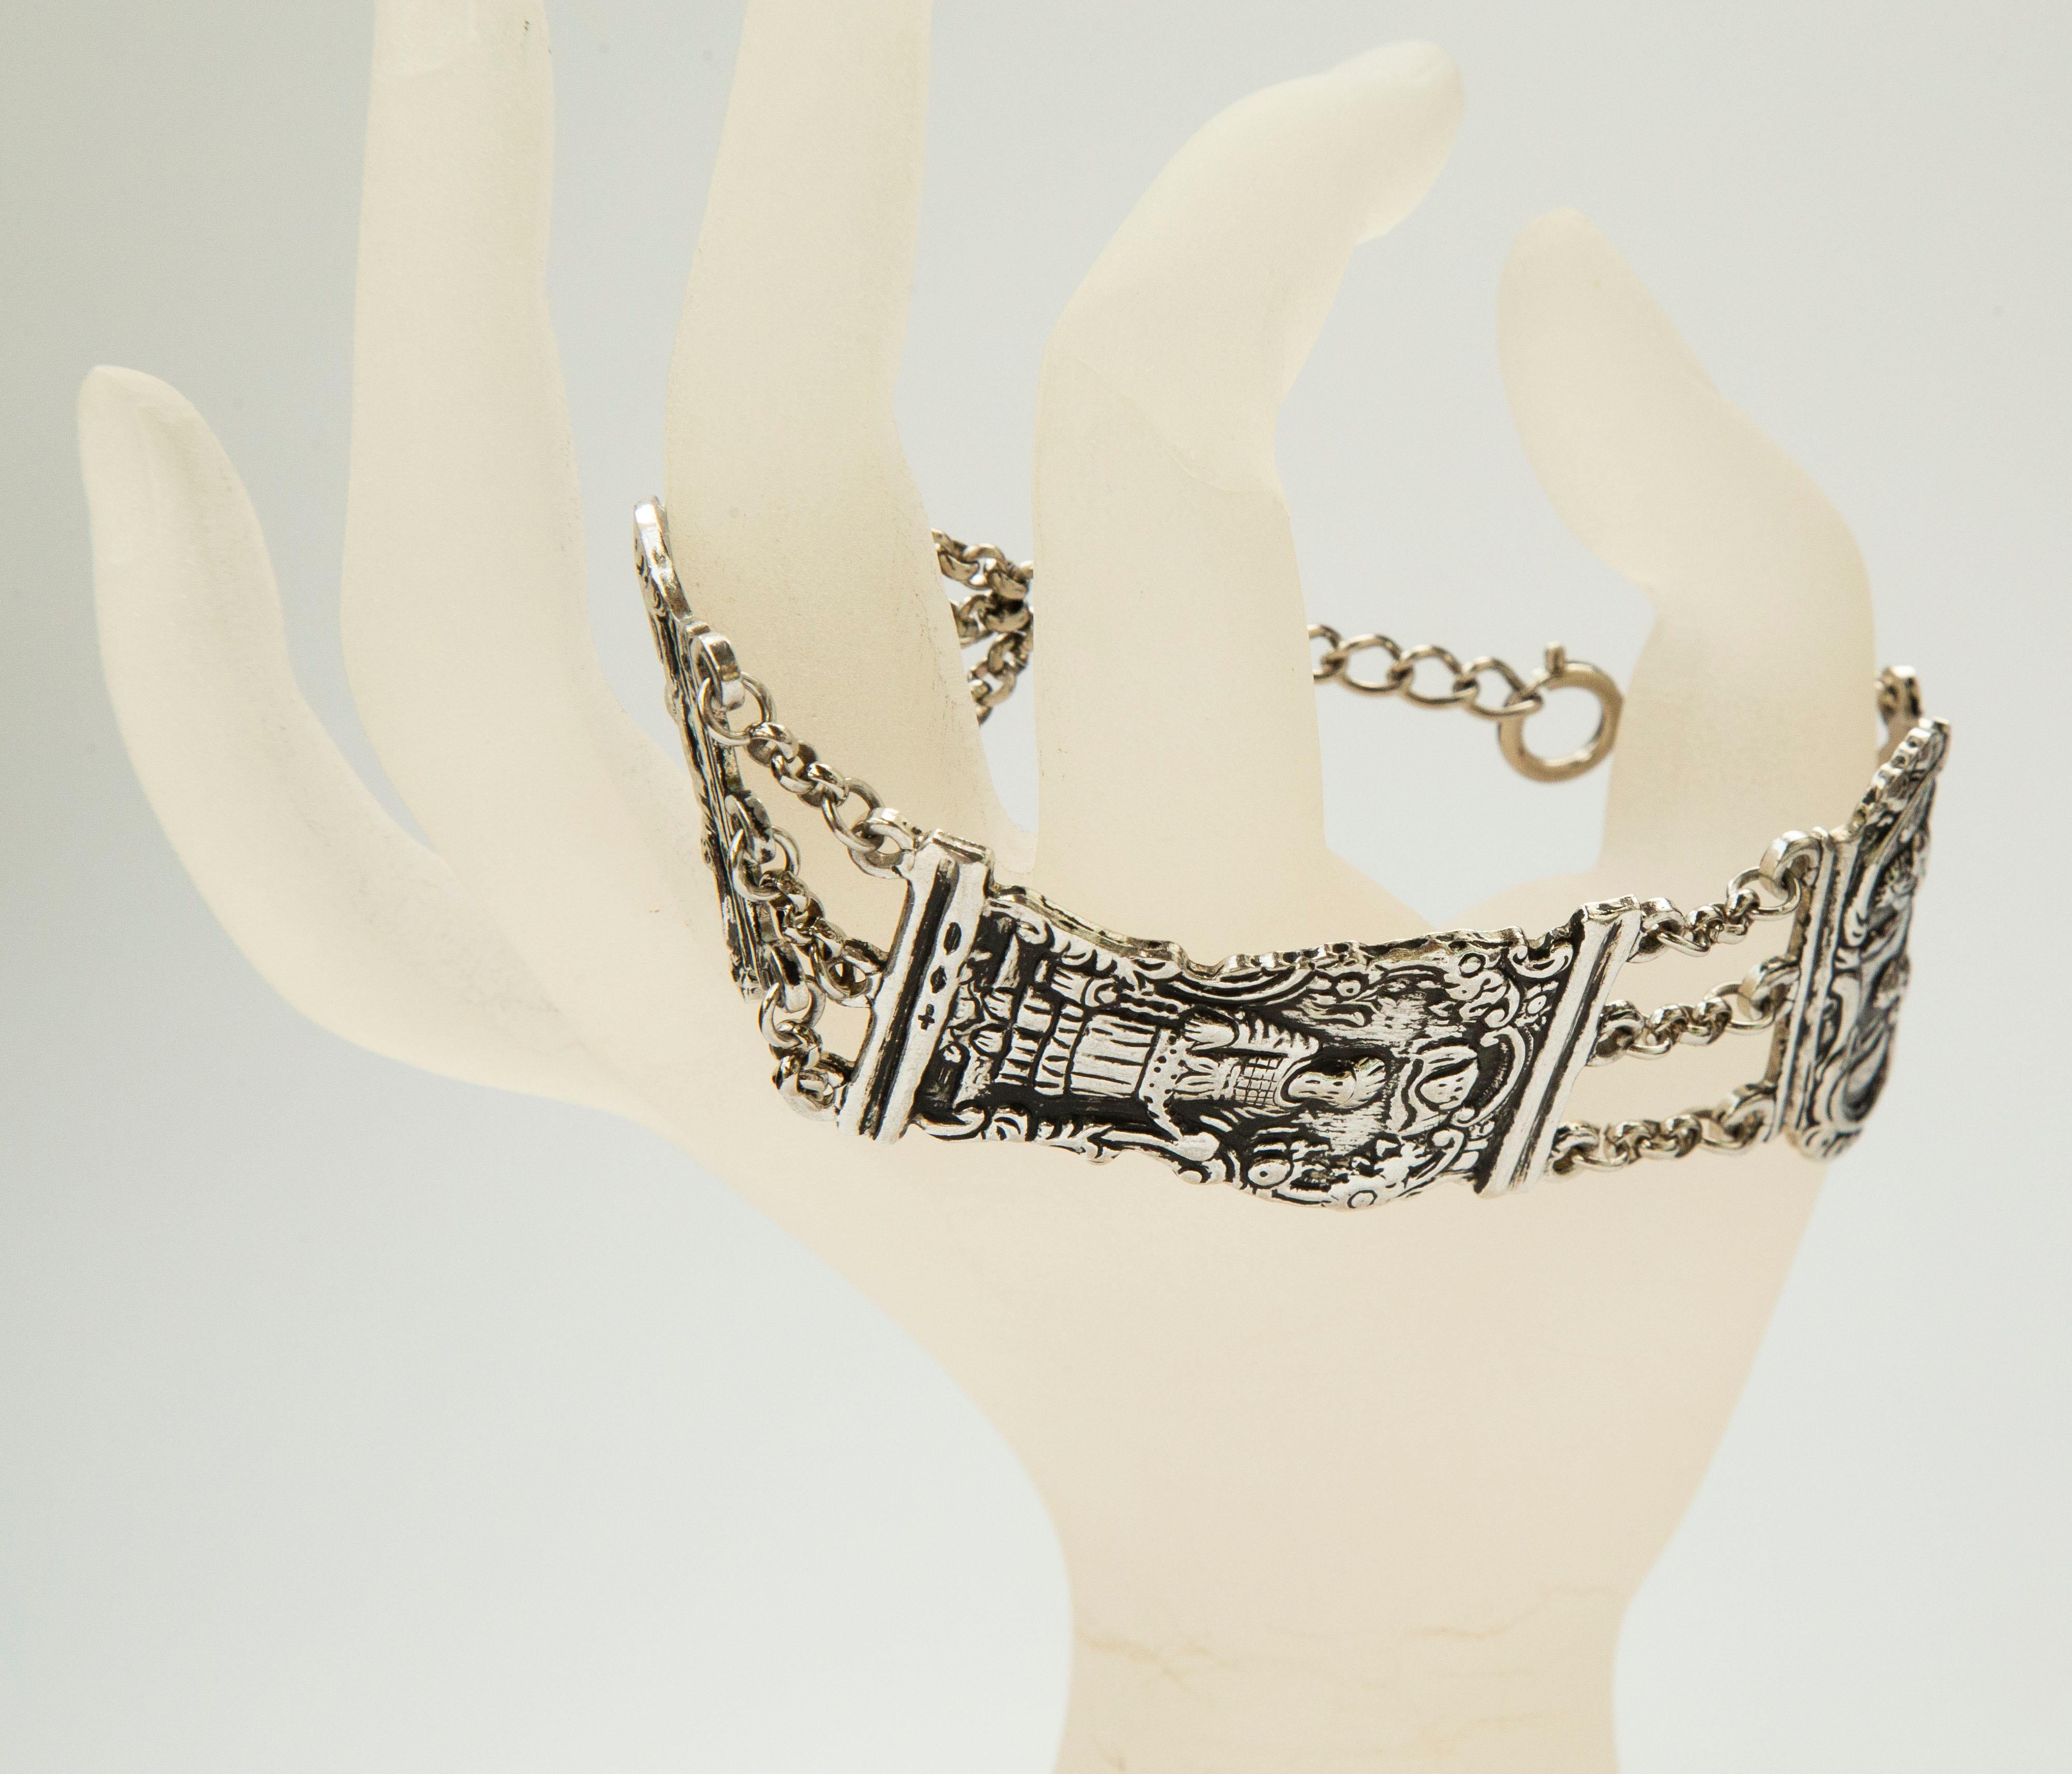 Un bracelet en argent fait d'une fermeture bible antique créée dans les années 1700/1800. Les maillons libres du bracelet représentent différentes figures bibliques sur un fond floral et sont reliés entre eux par une chaîne à trois rangs. Le